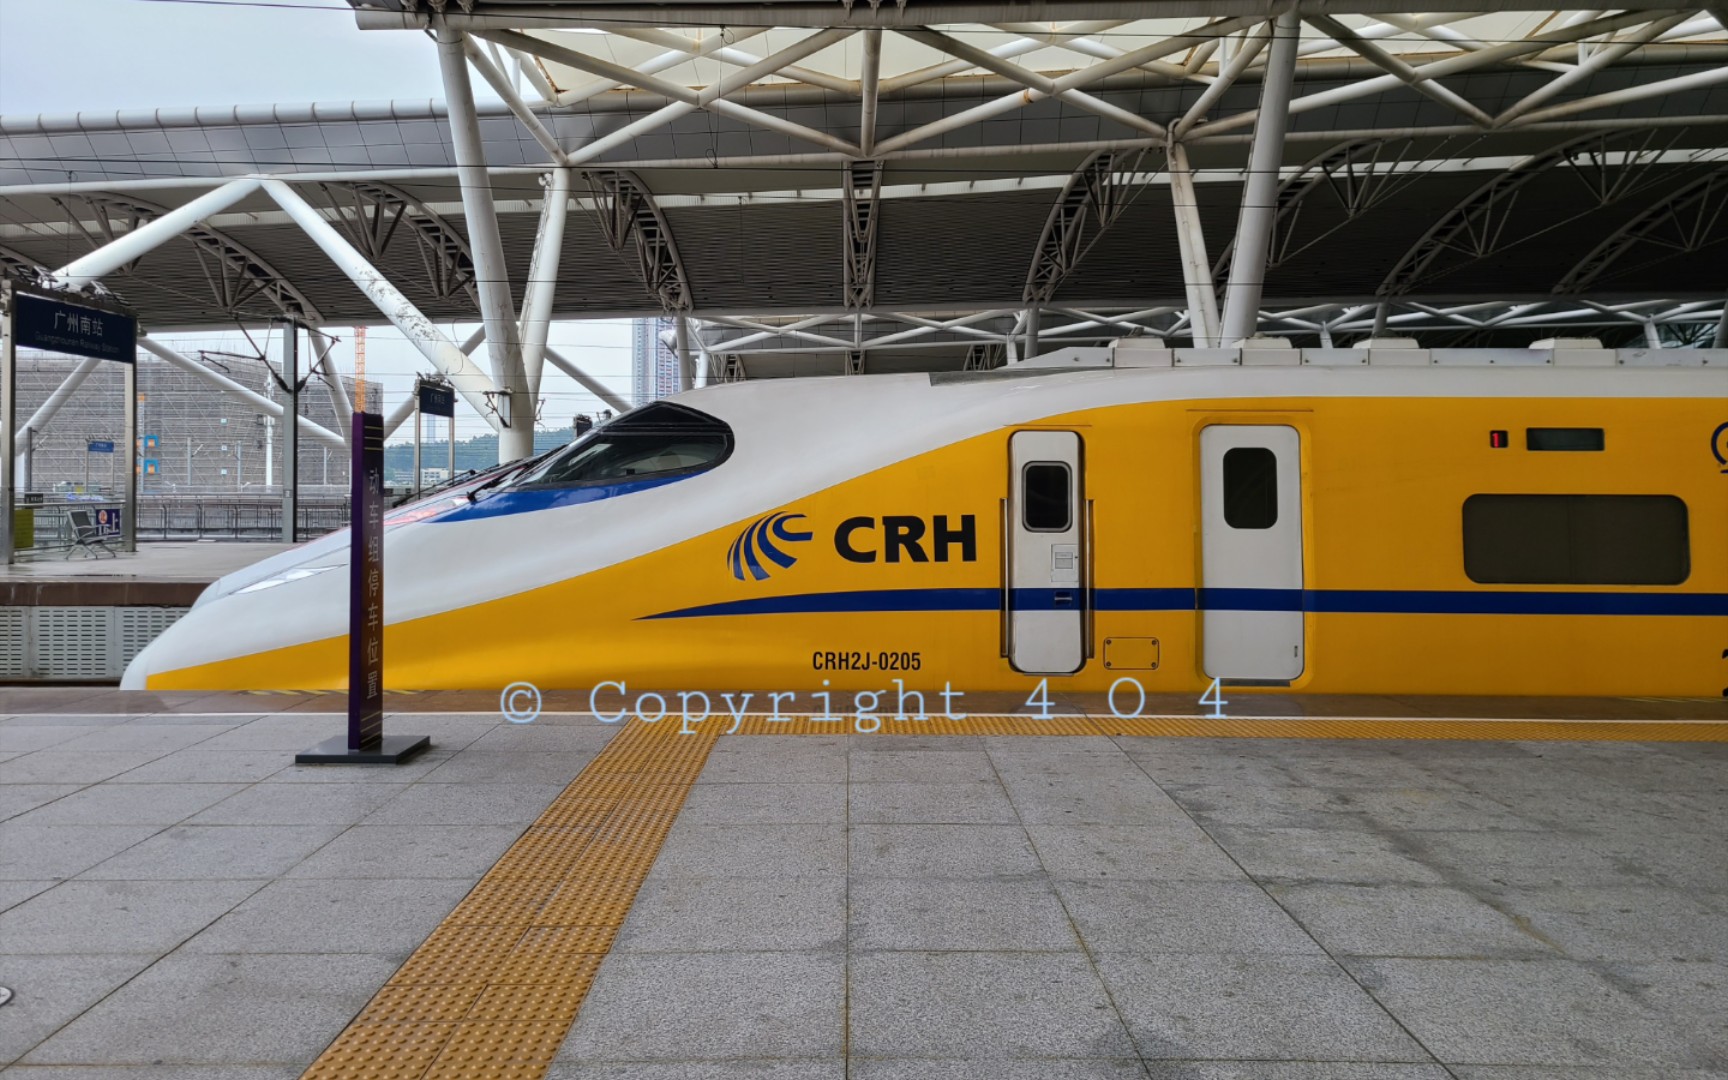 crh2j-0205检测列车图片